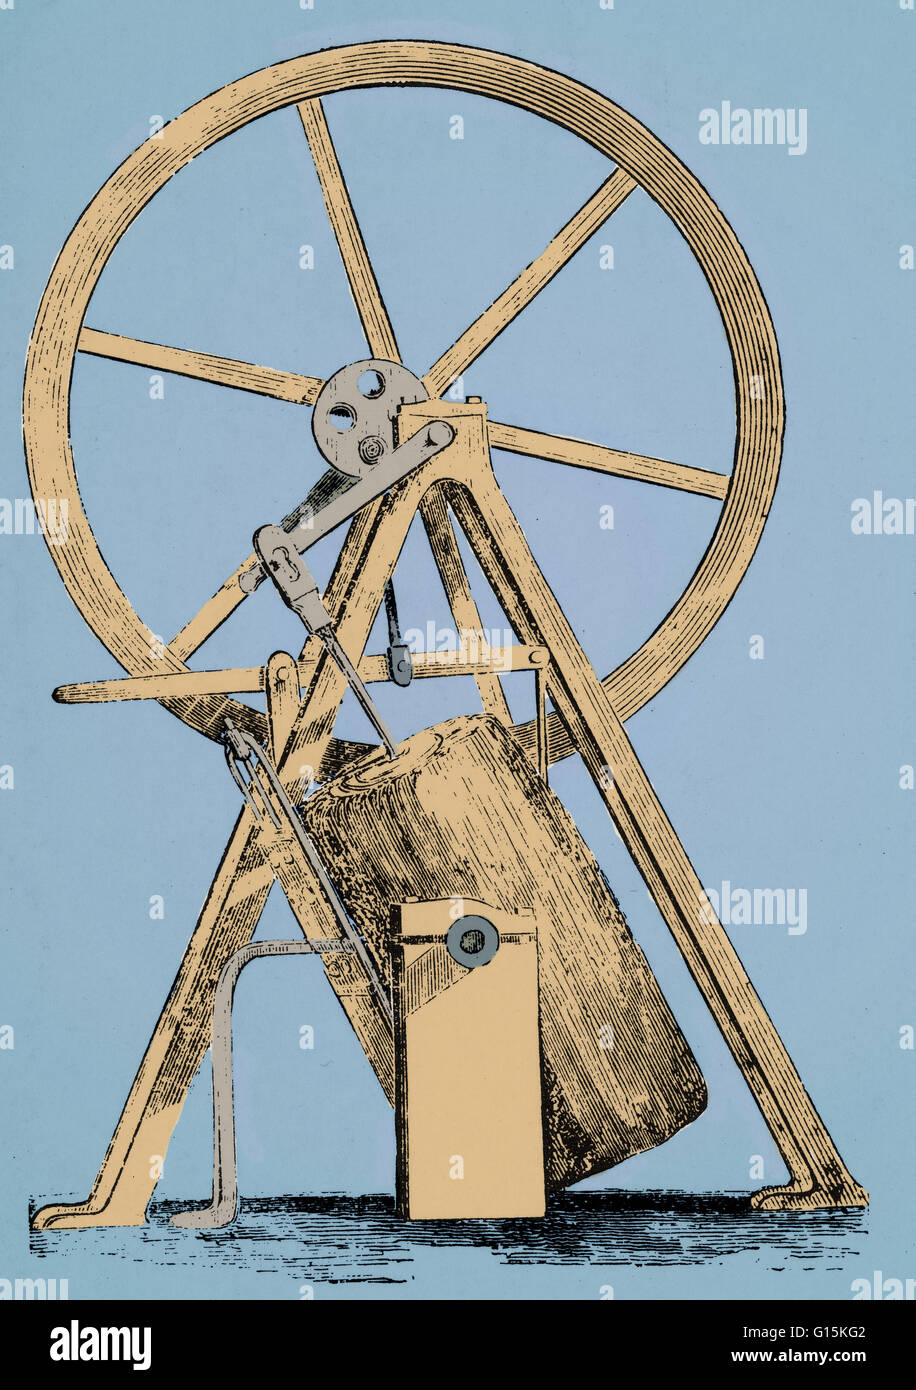 Watt del primo design per un motore oscillante. James Watt (1736-1819) era un inventore scozzese e ingegnere meccanico che ha notevolmente migliorato il motore di vapore. Foto Stock